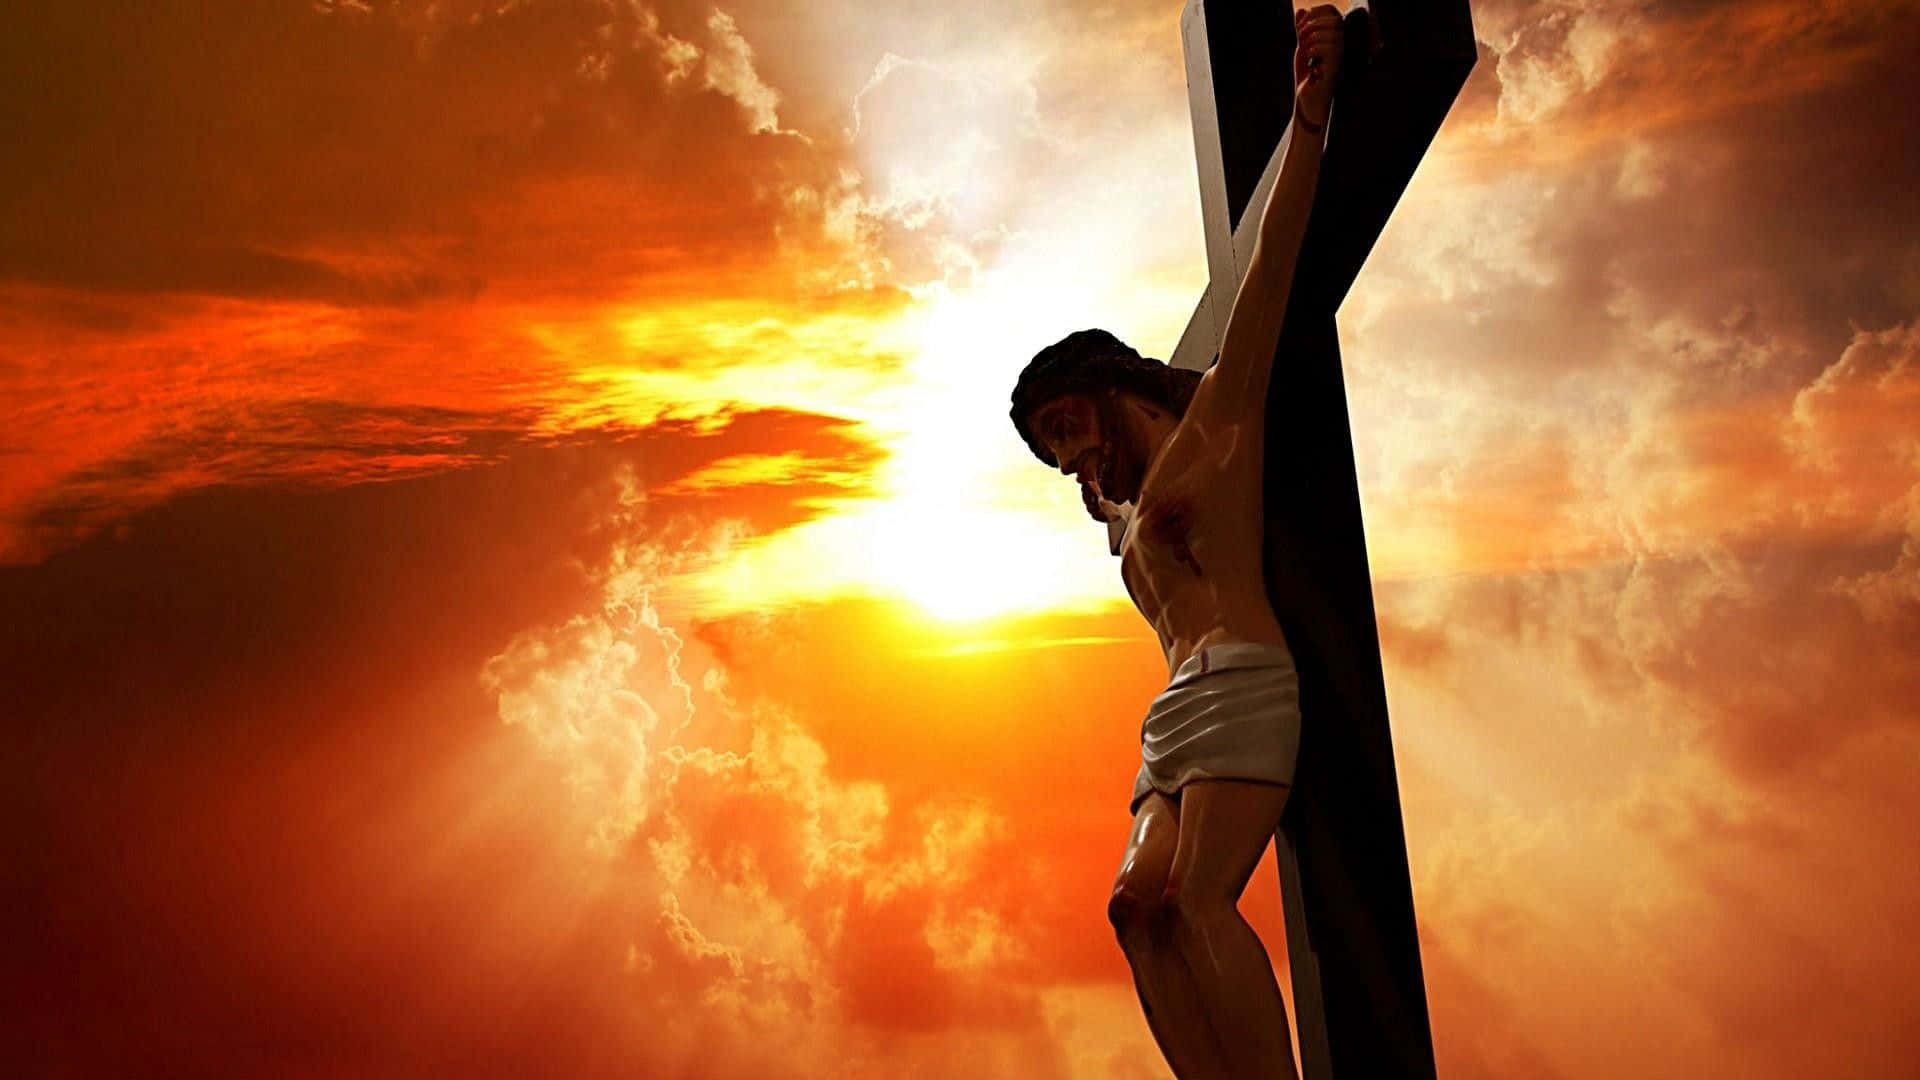 Jesus på korset med skarpe solnedgangsbilleder